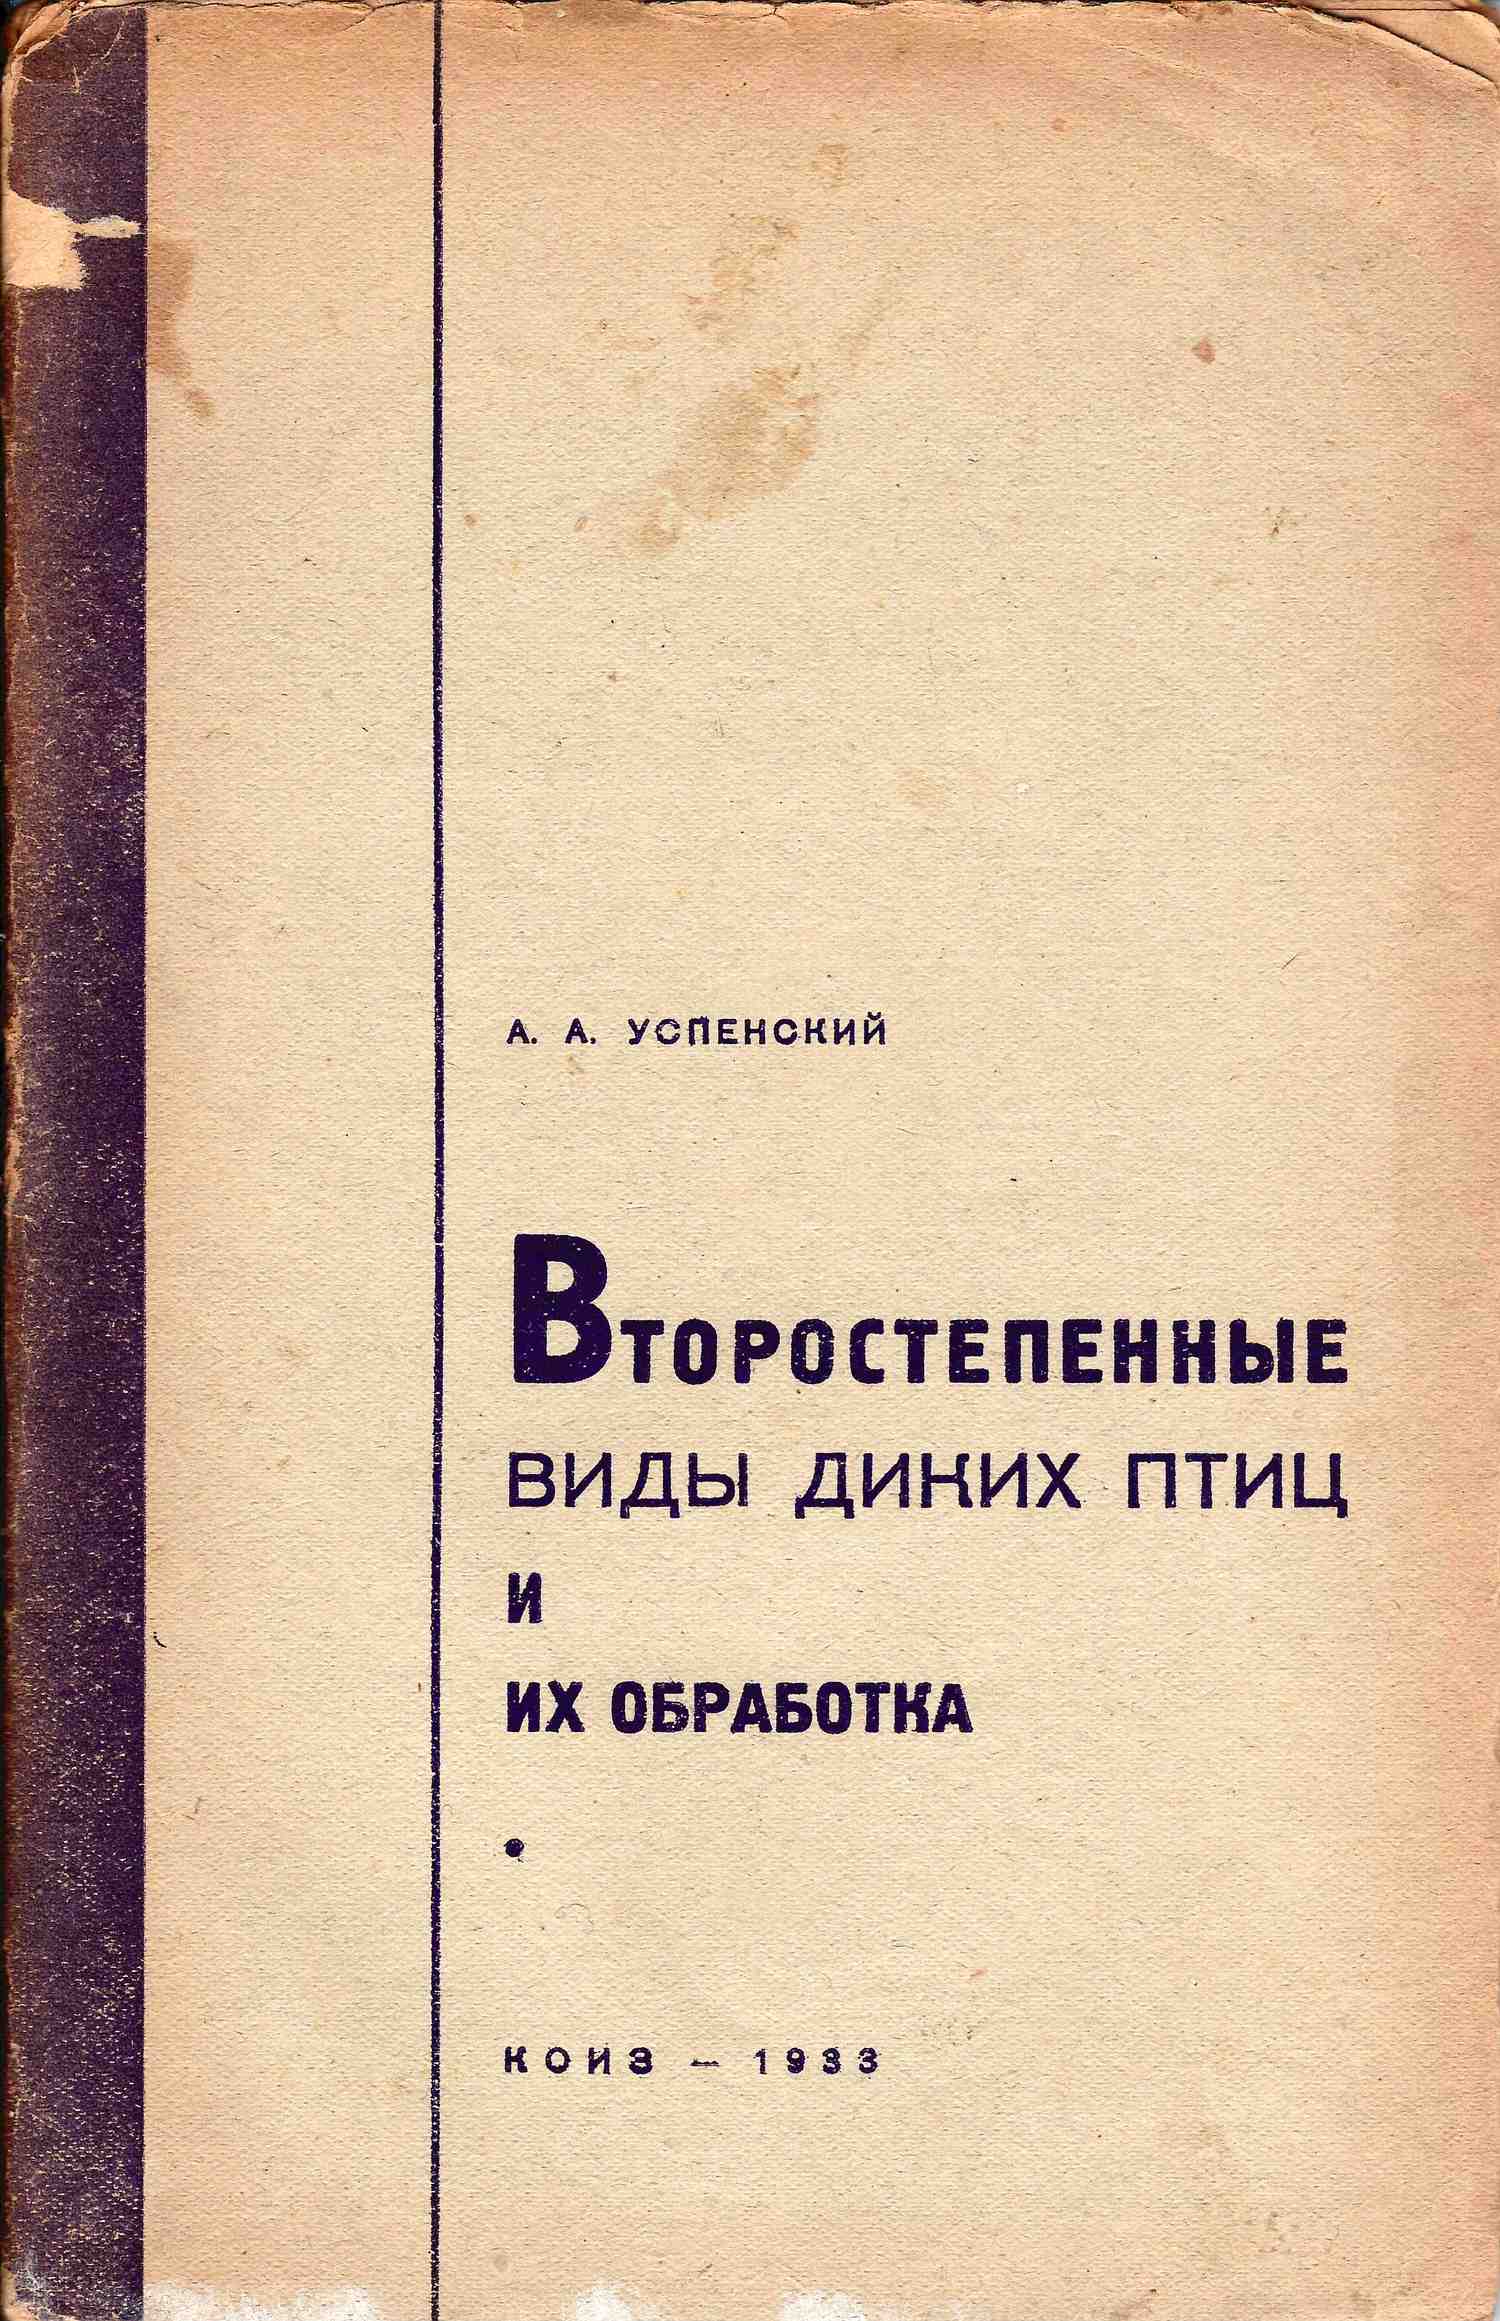 Успенский А.А. Второстепенные виды диких птиц и их обработка (М.-Л., 1933).